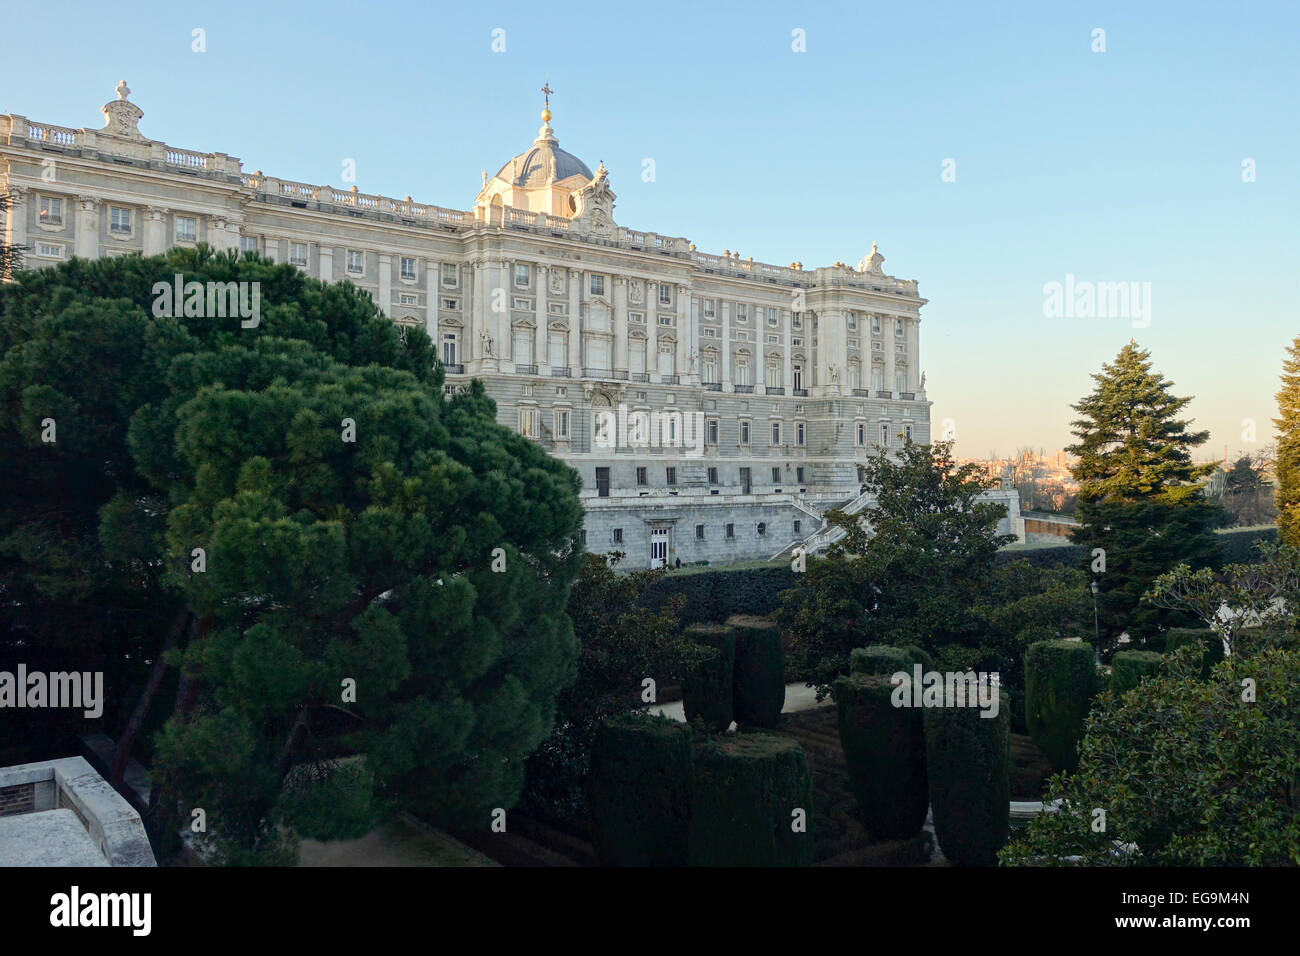 Palacio Real de Madrid, Königspalast, offizielle Residenz des spanischen Königshauses, Madrid, Spanien. Stockfoto